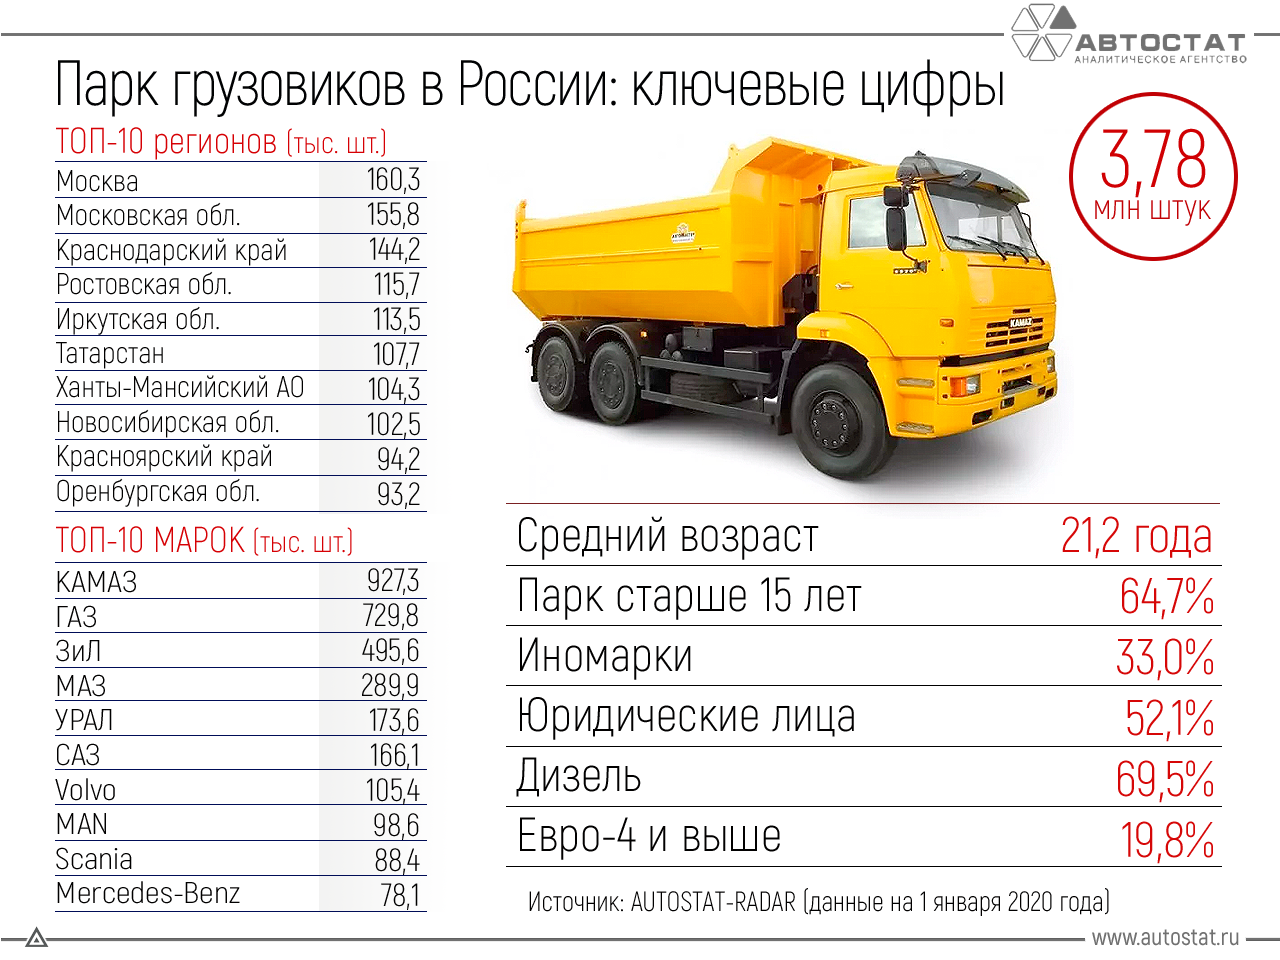 Таблица автопарка. Парк грузовиков в России. Автостат парк грузовых автомобилей. Структура парка грузовых автомобилей в России. Объём грузовых авто.